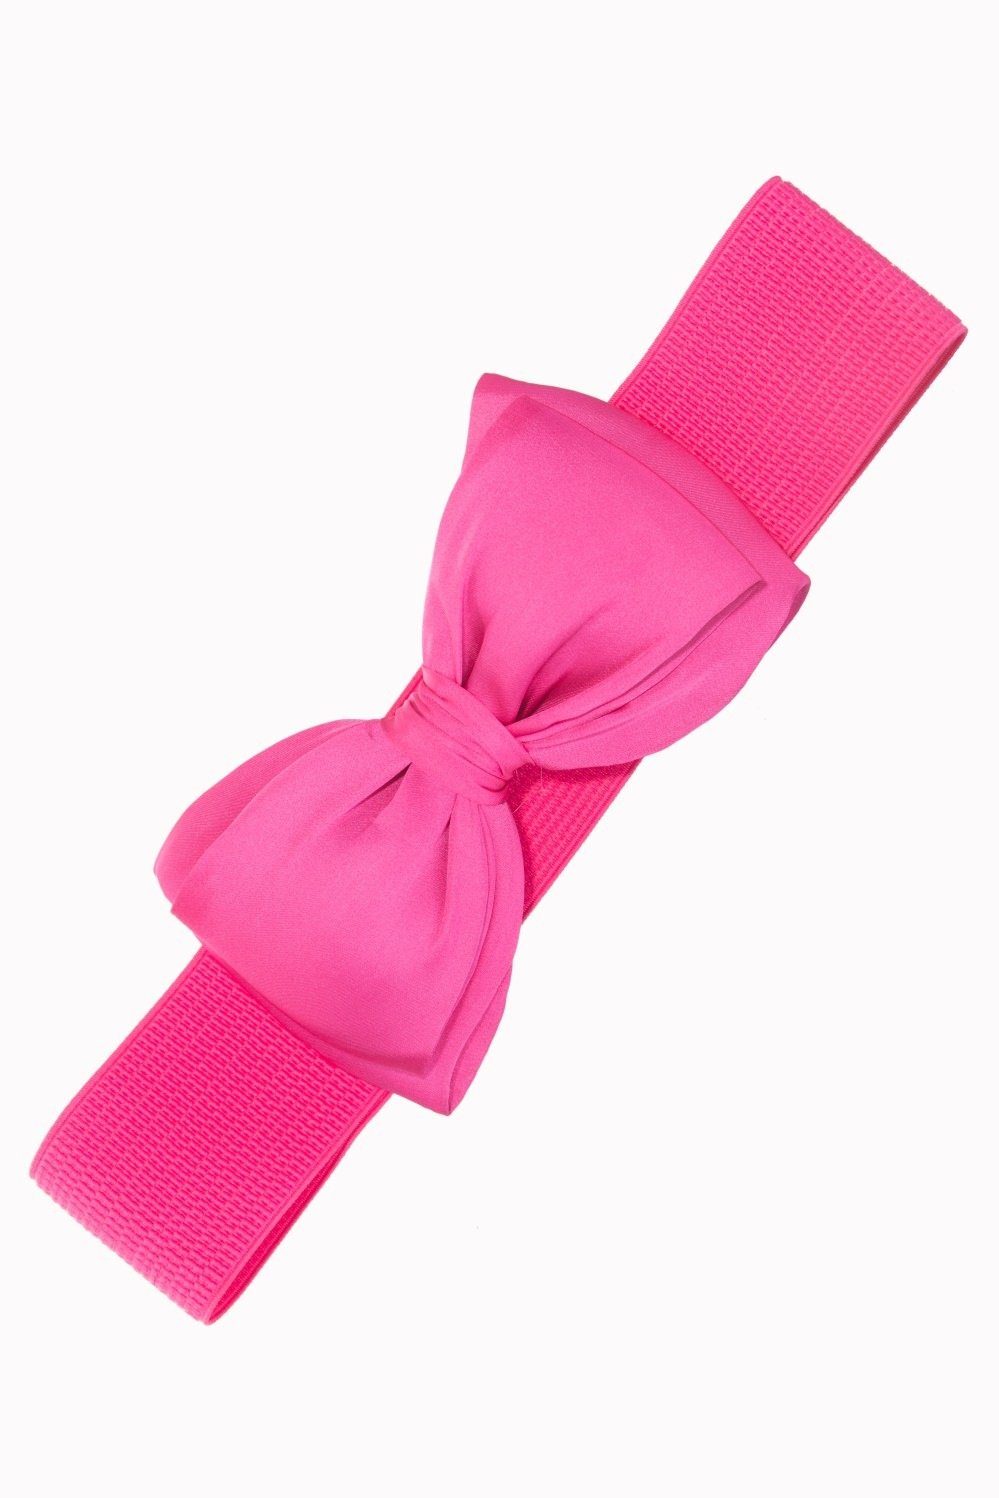 Schleife Bella Belt Taillengürtel Retro Banned Pink Stretchgürtel Vintage